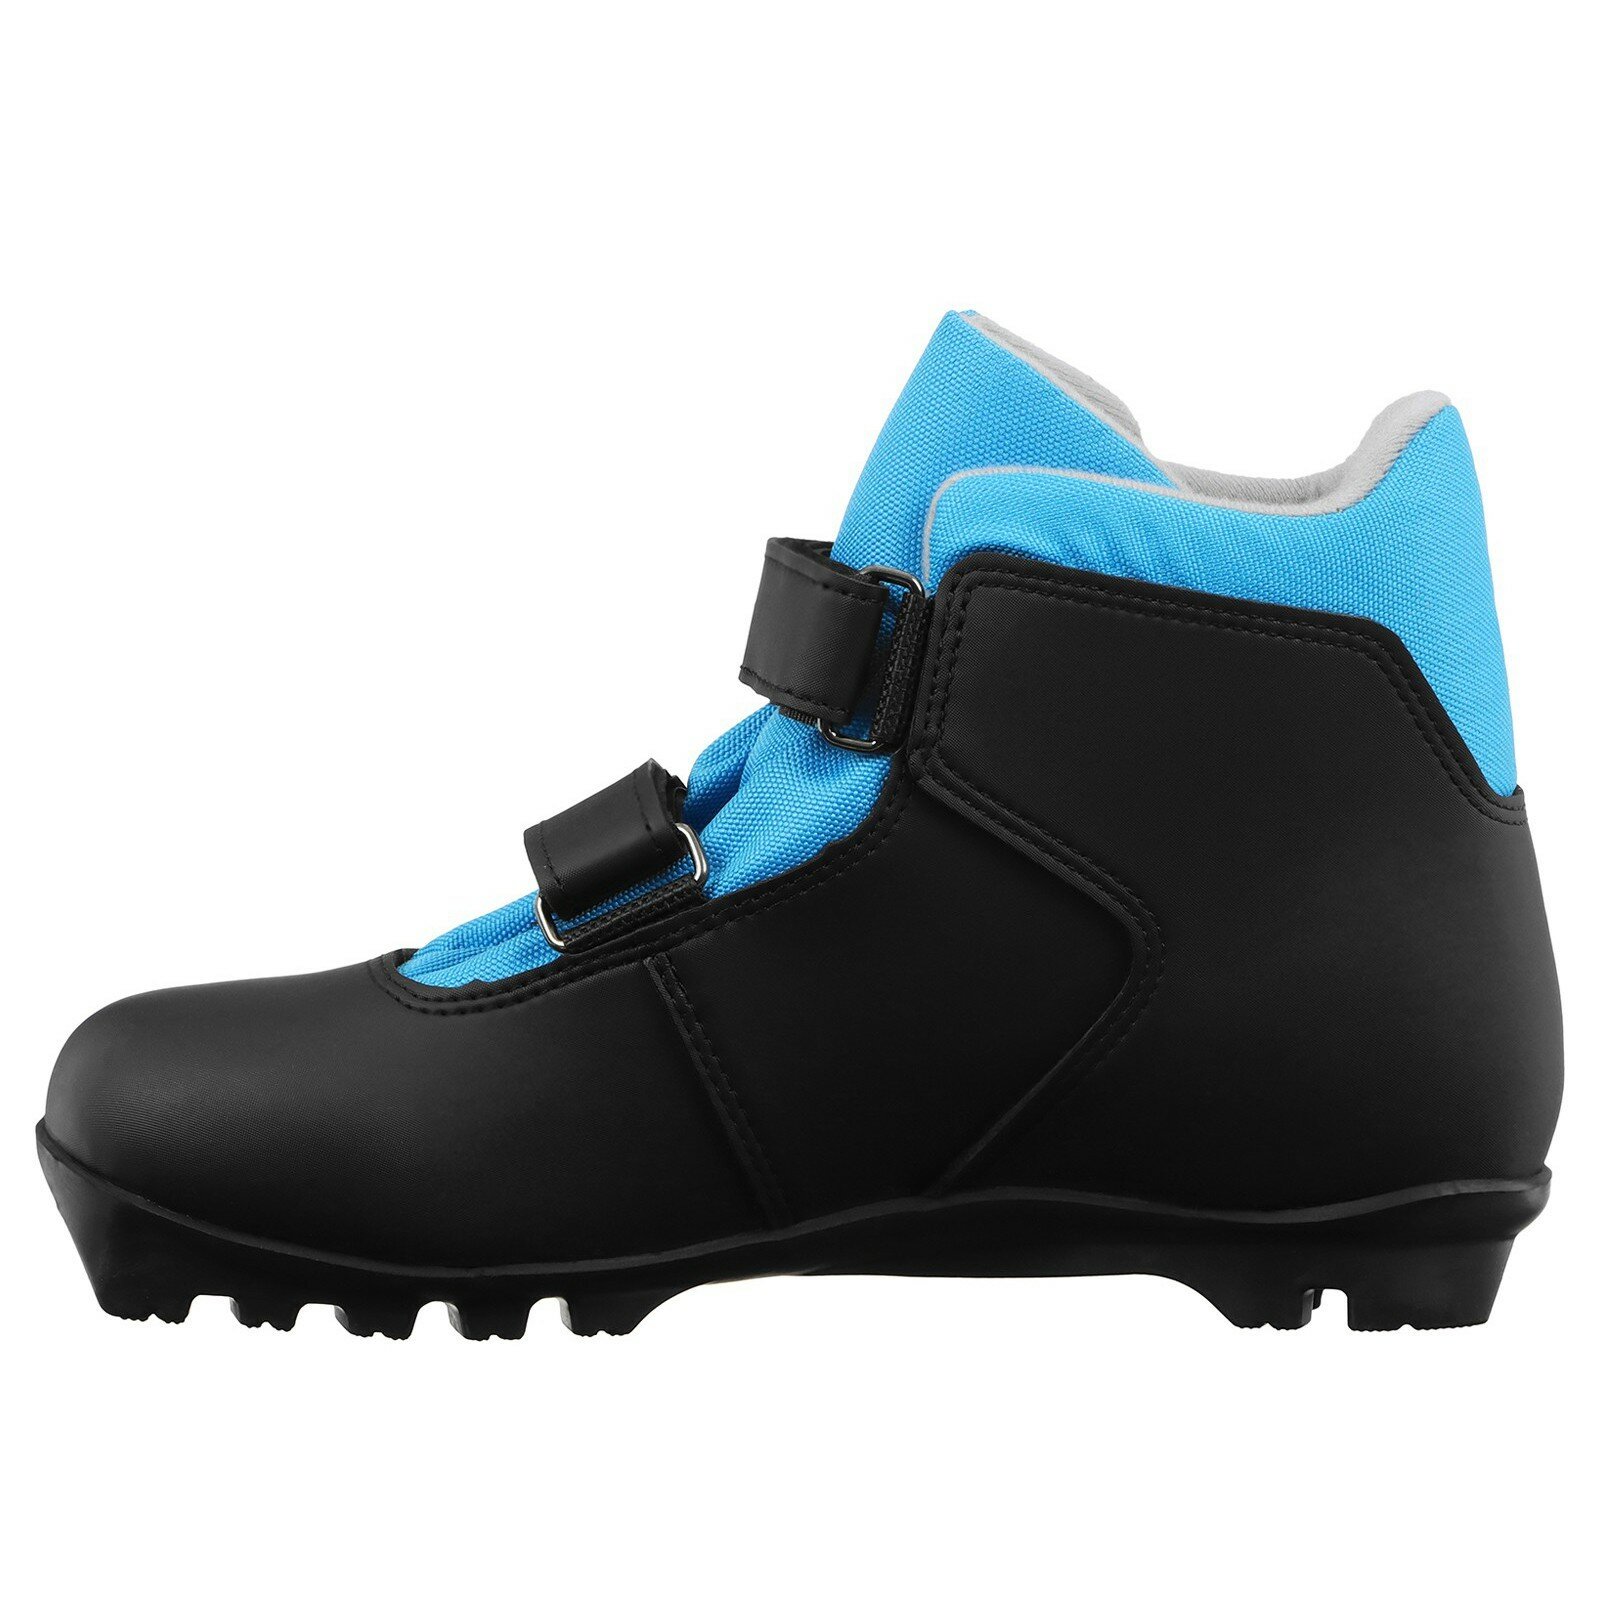 Ботинки лыжные детские Winter Star control kids, NNN, размер 39, цвет чёрный, синий